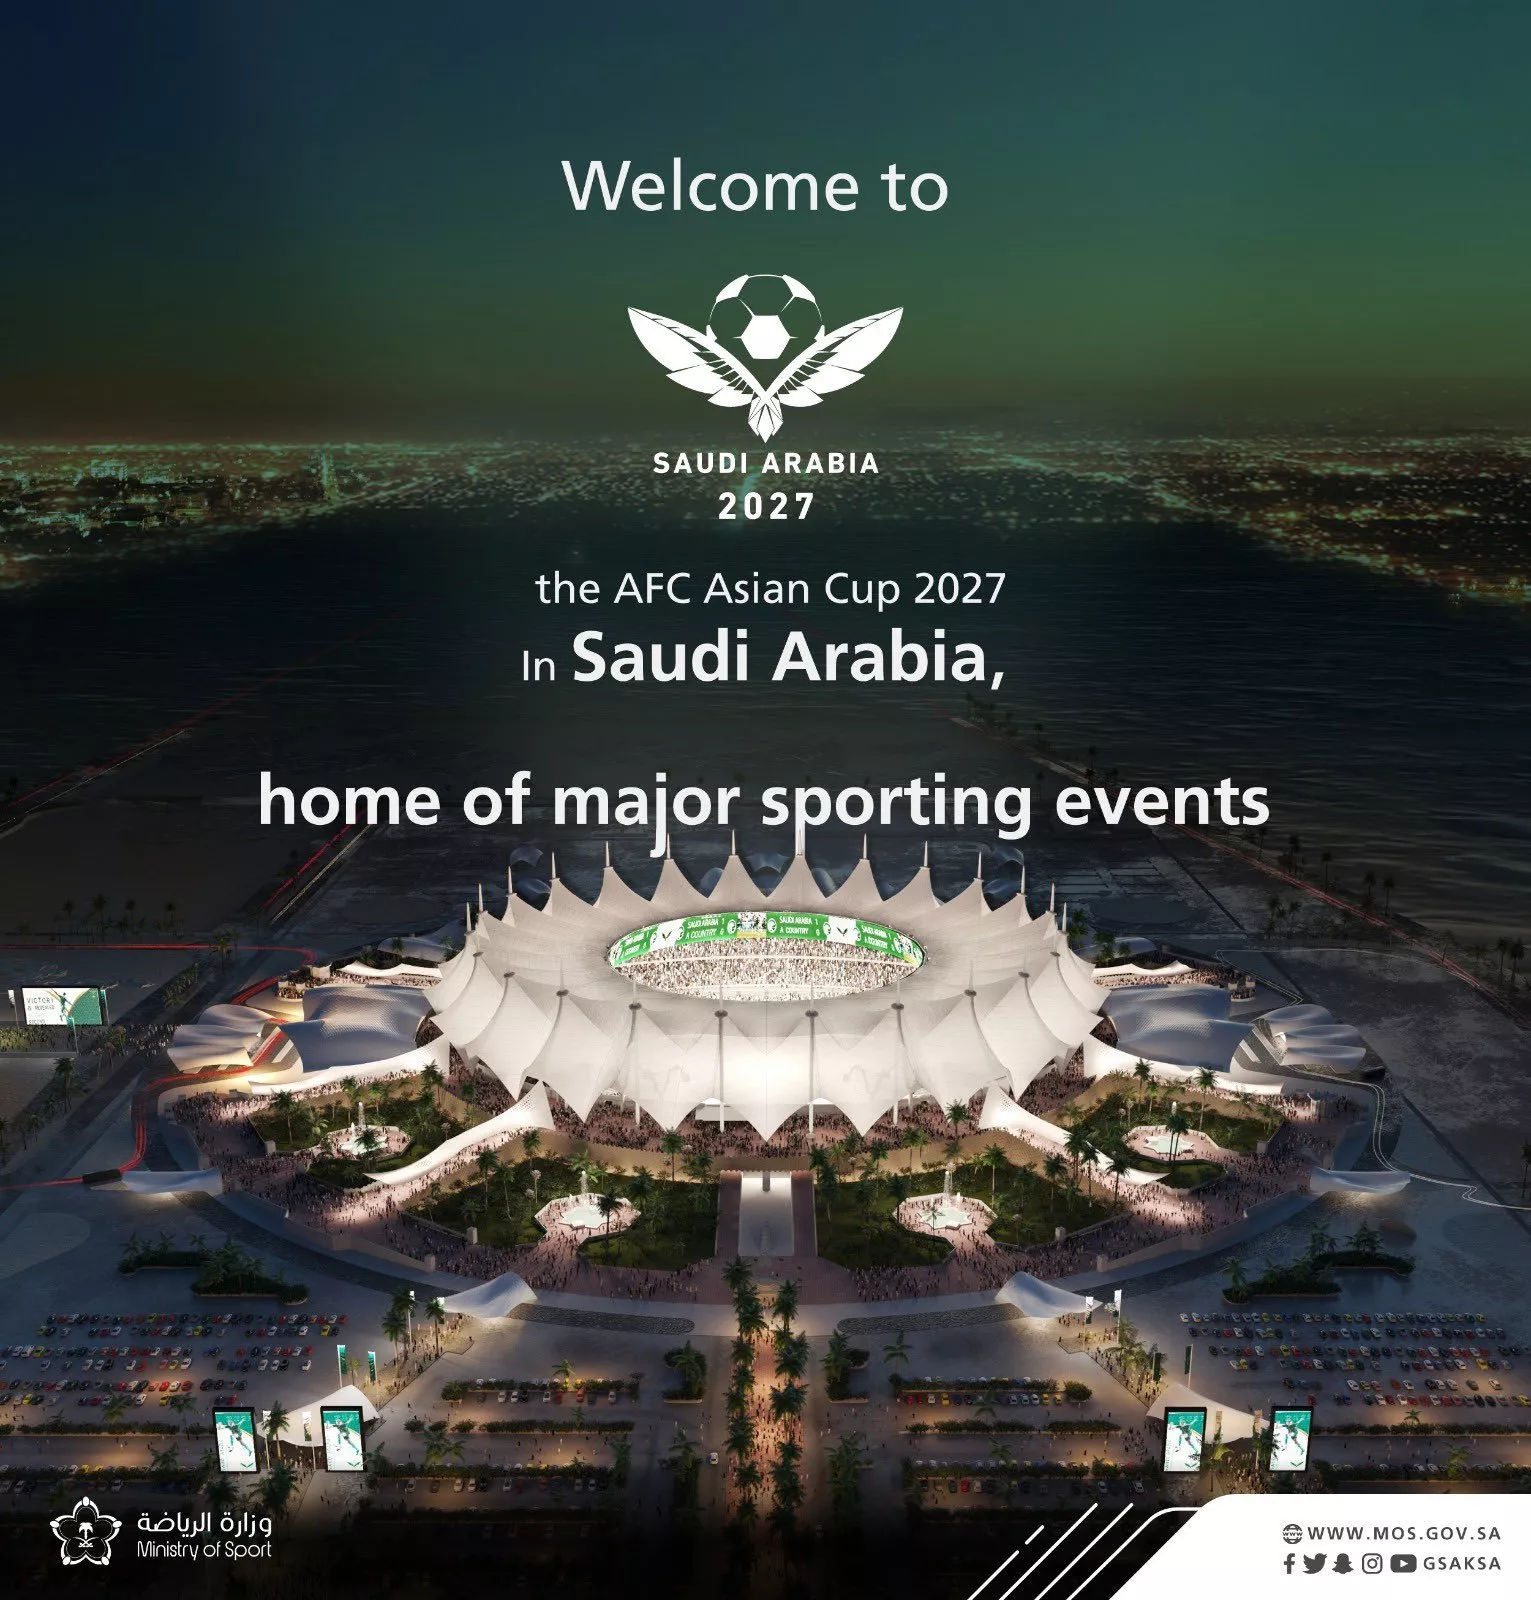 المملكة العربية السعودية تحصل على حق استضافة كأس آسيا 2027